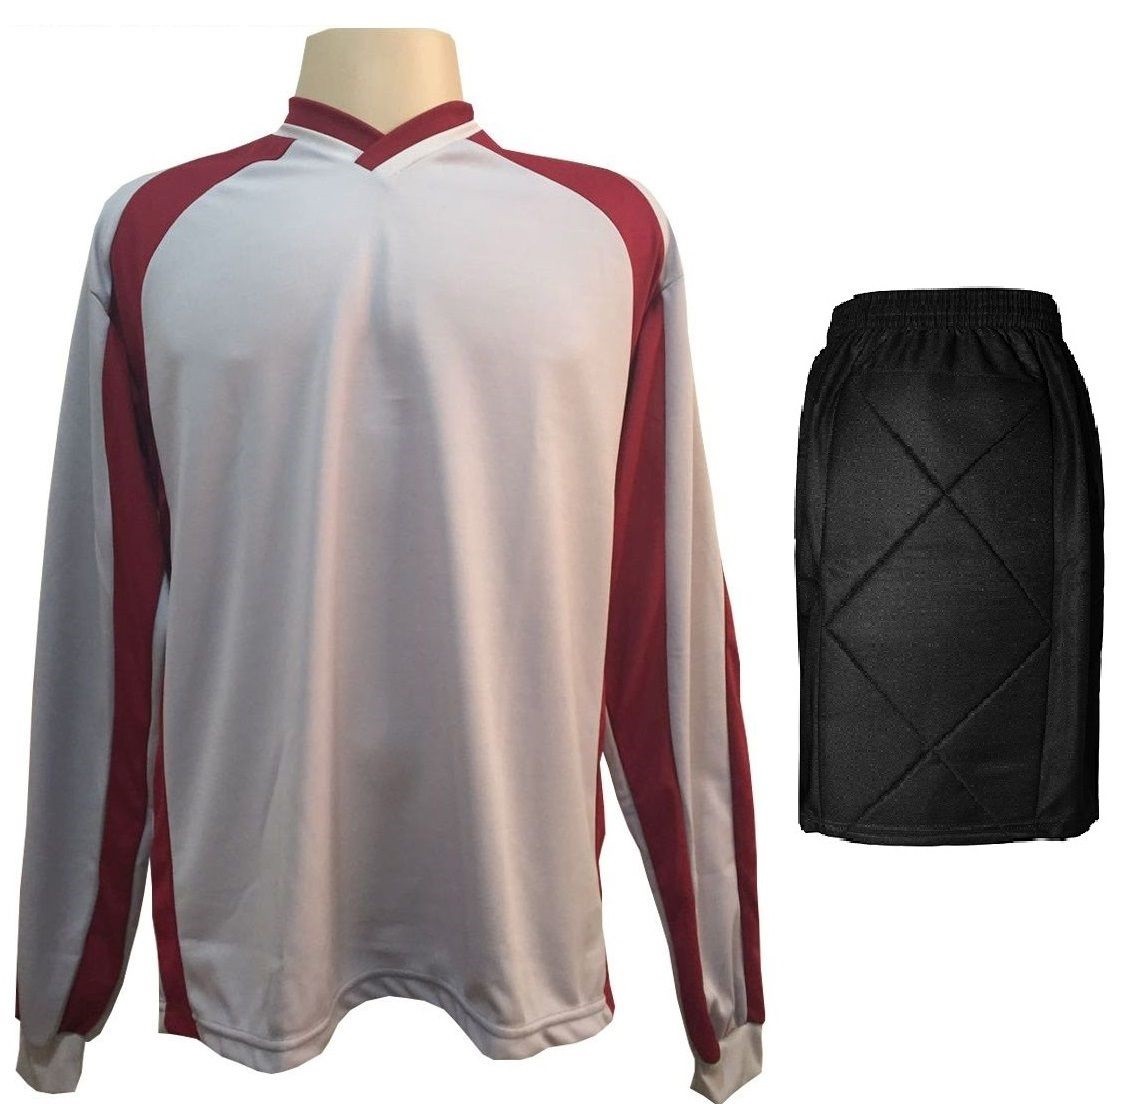 Uniforme Esportivo com 20 camisas modelo Milan Celeste/Branco + 20 calções modelo Copa + 1 Goleiro + Brindes